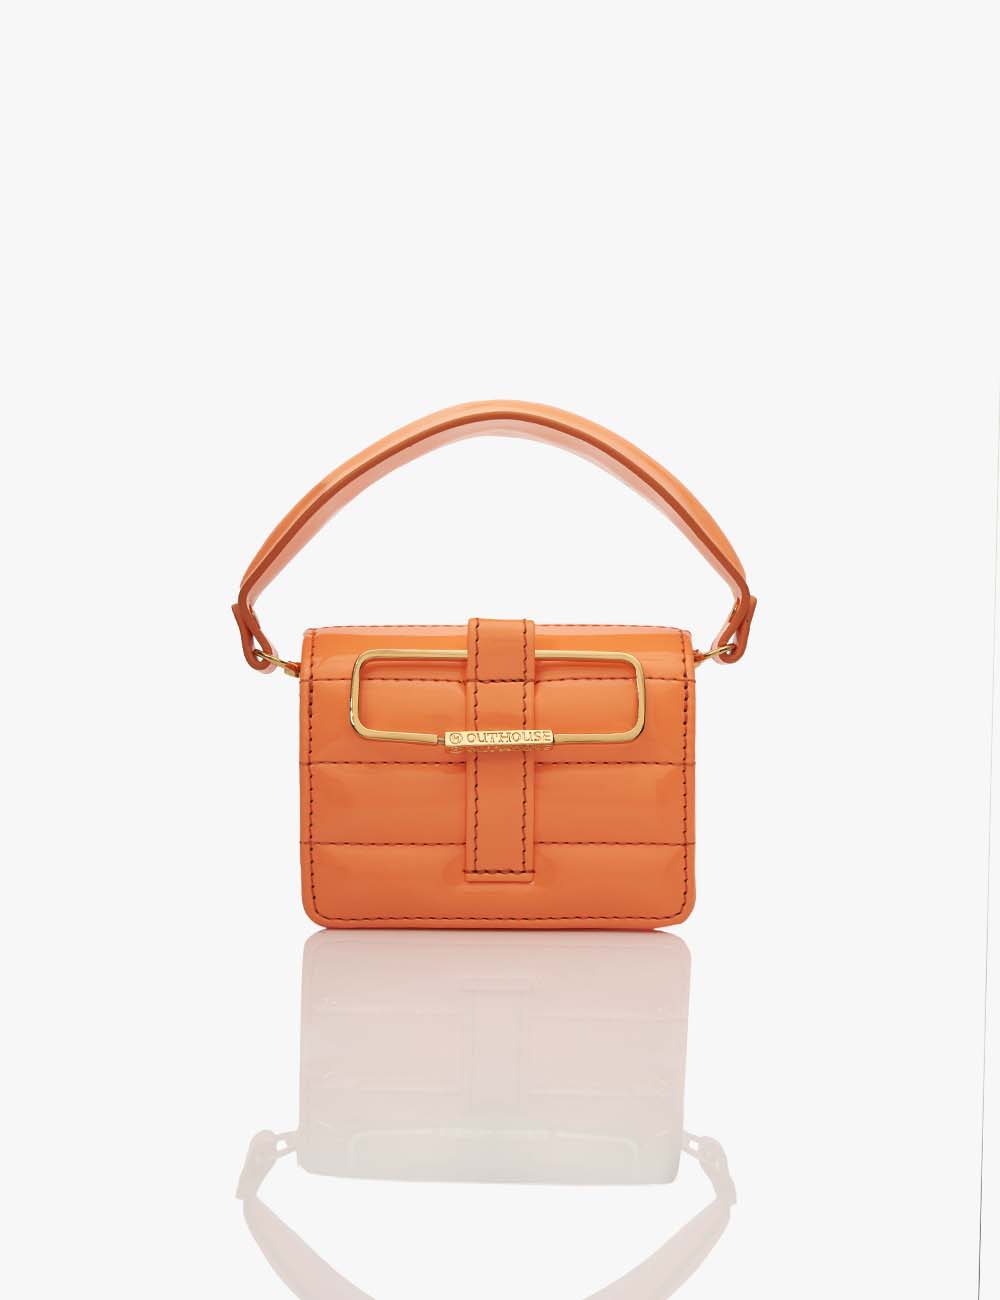 Buy SUKUTU Fruit Orange Shaped Girl Purses PU Leather Crossbody Bag for  women at Amazon.in